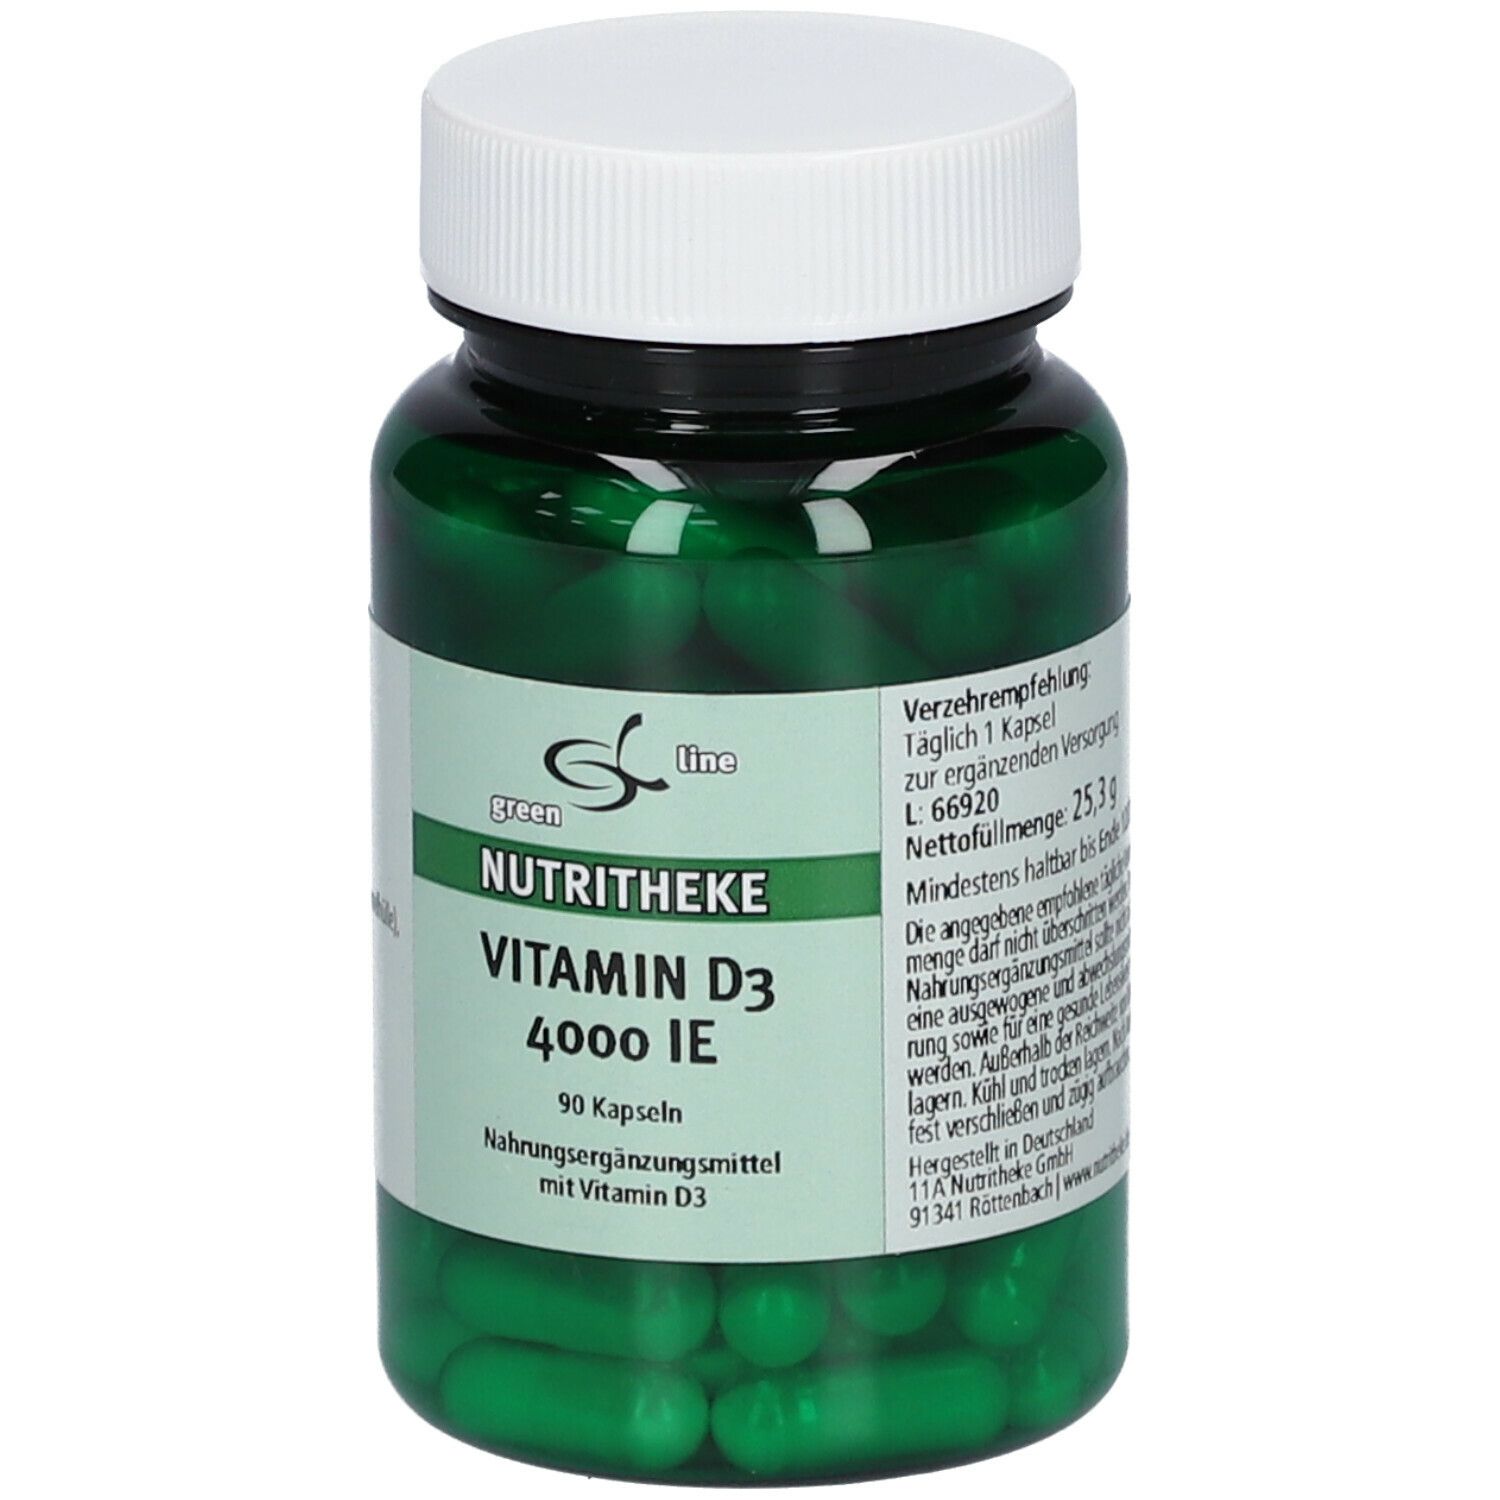 green line Vitamin D3 4000 I.E.